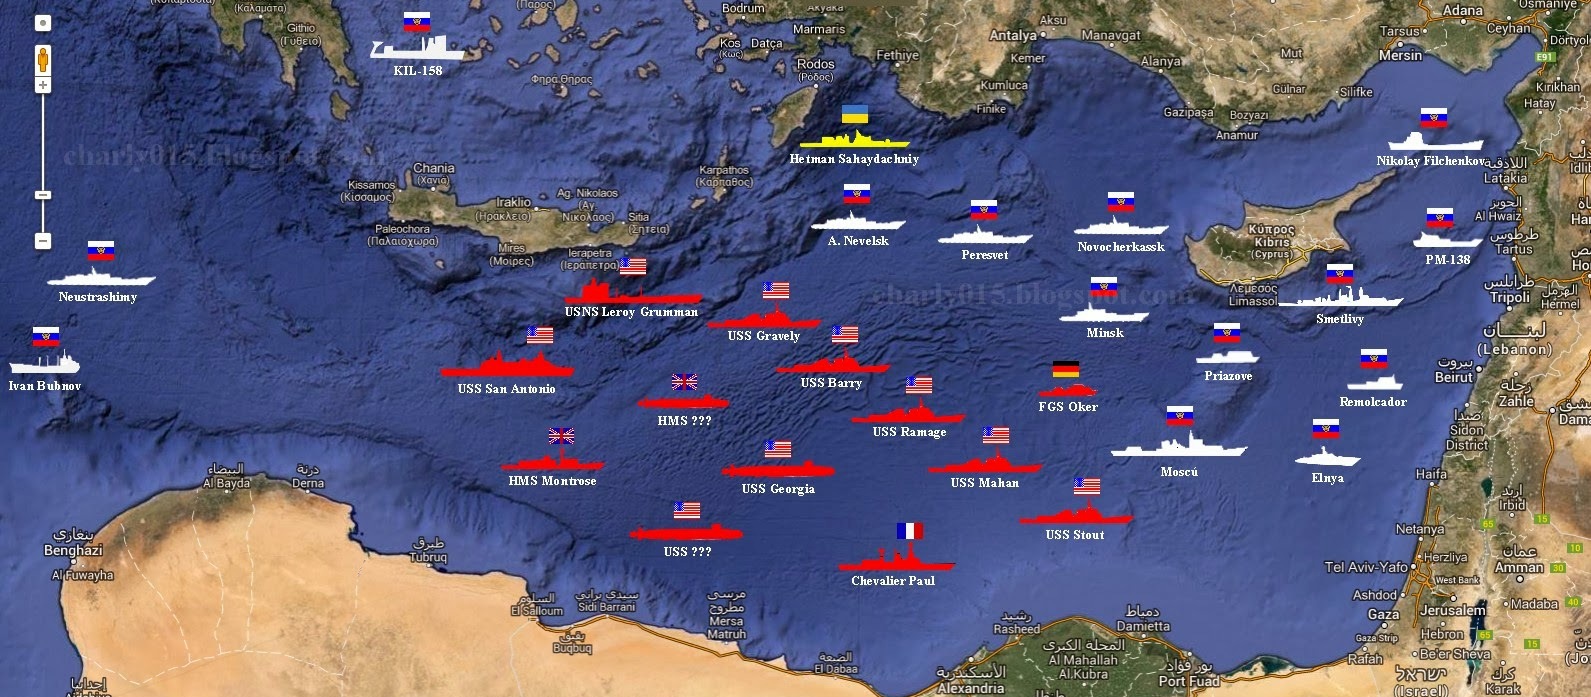 «Κάτι ετοιμάζεται» στην Αν.Μεσόγειο – Πρωτοφανής αντιπαράθεση Στόλων ΗΠΑ, Γαλλίας, Βρετανίας & Γερμανίας με ρωσικό Στόλο